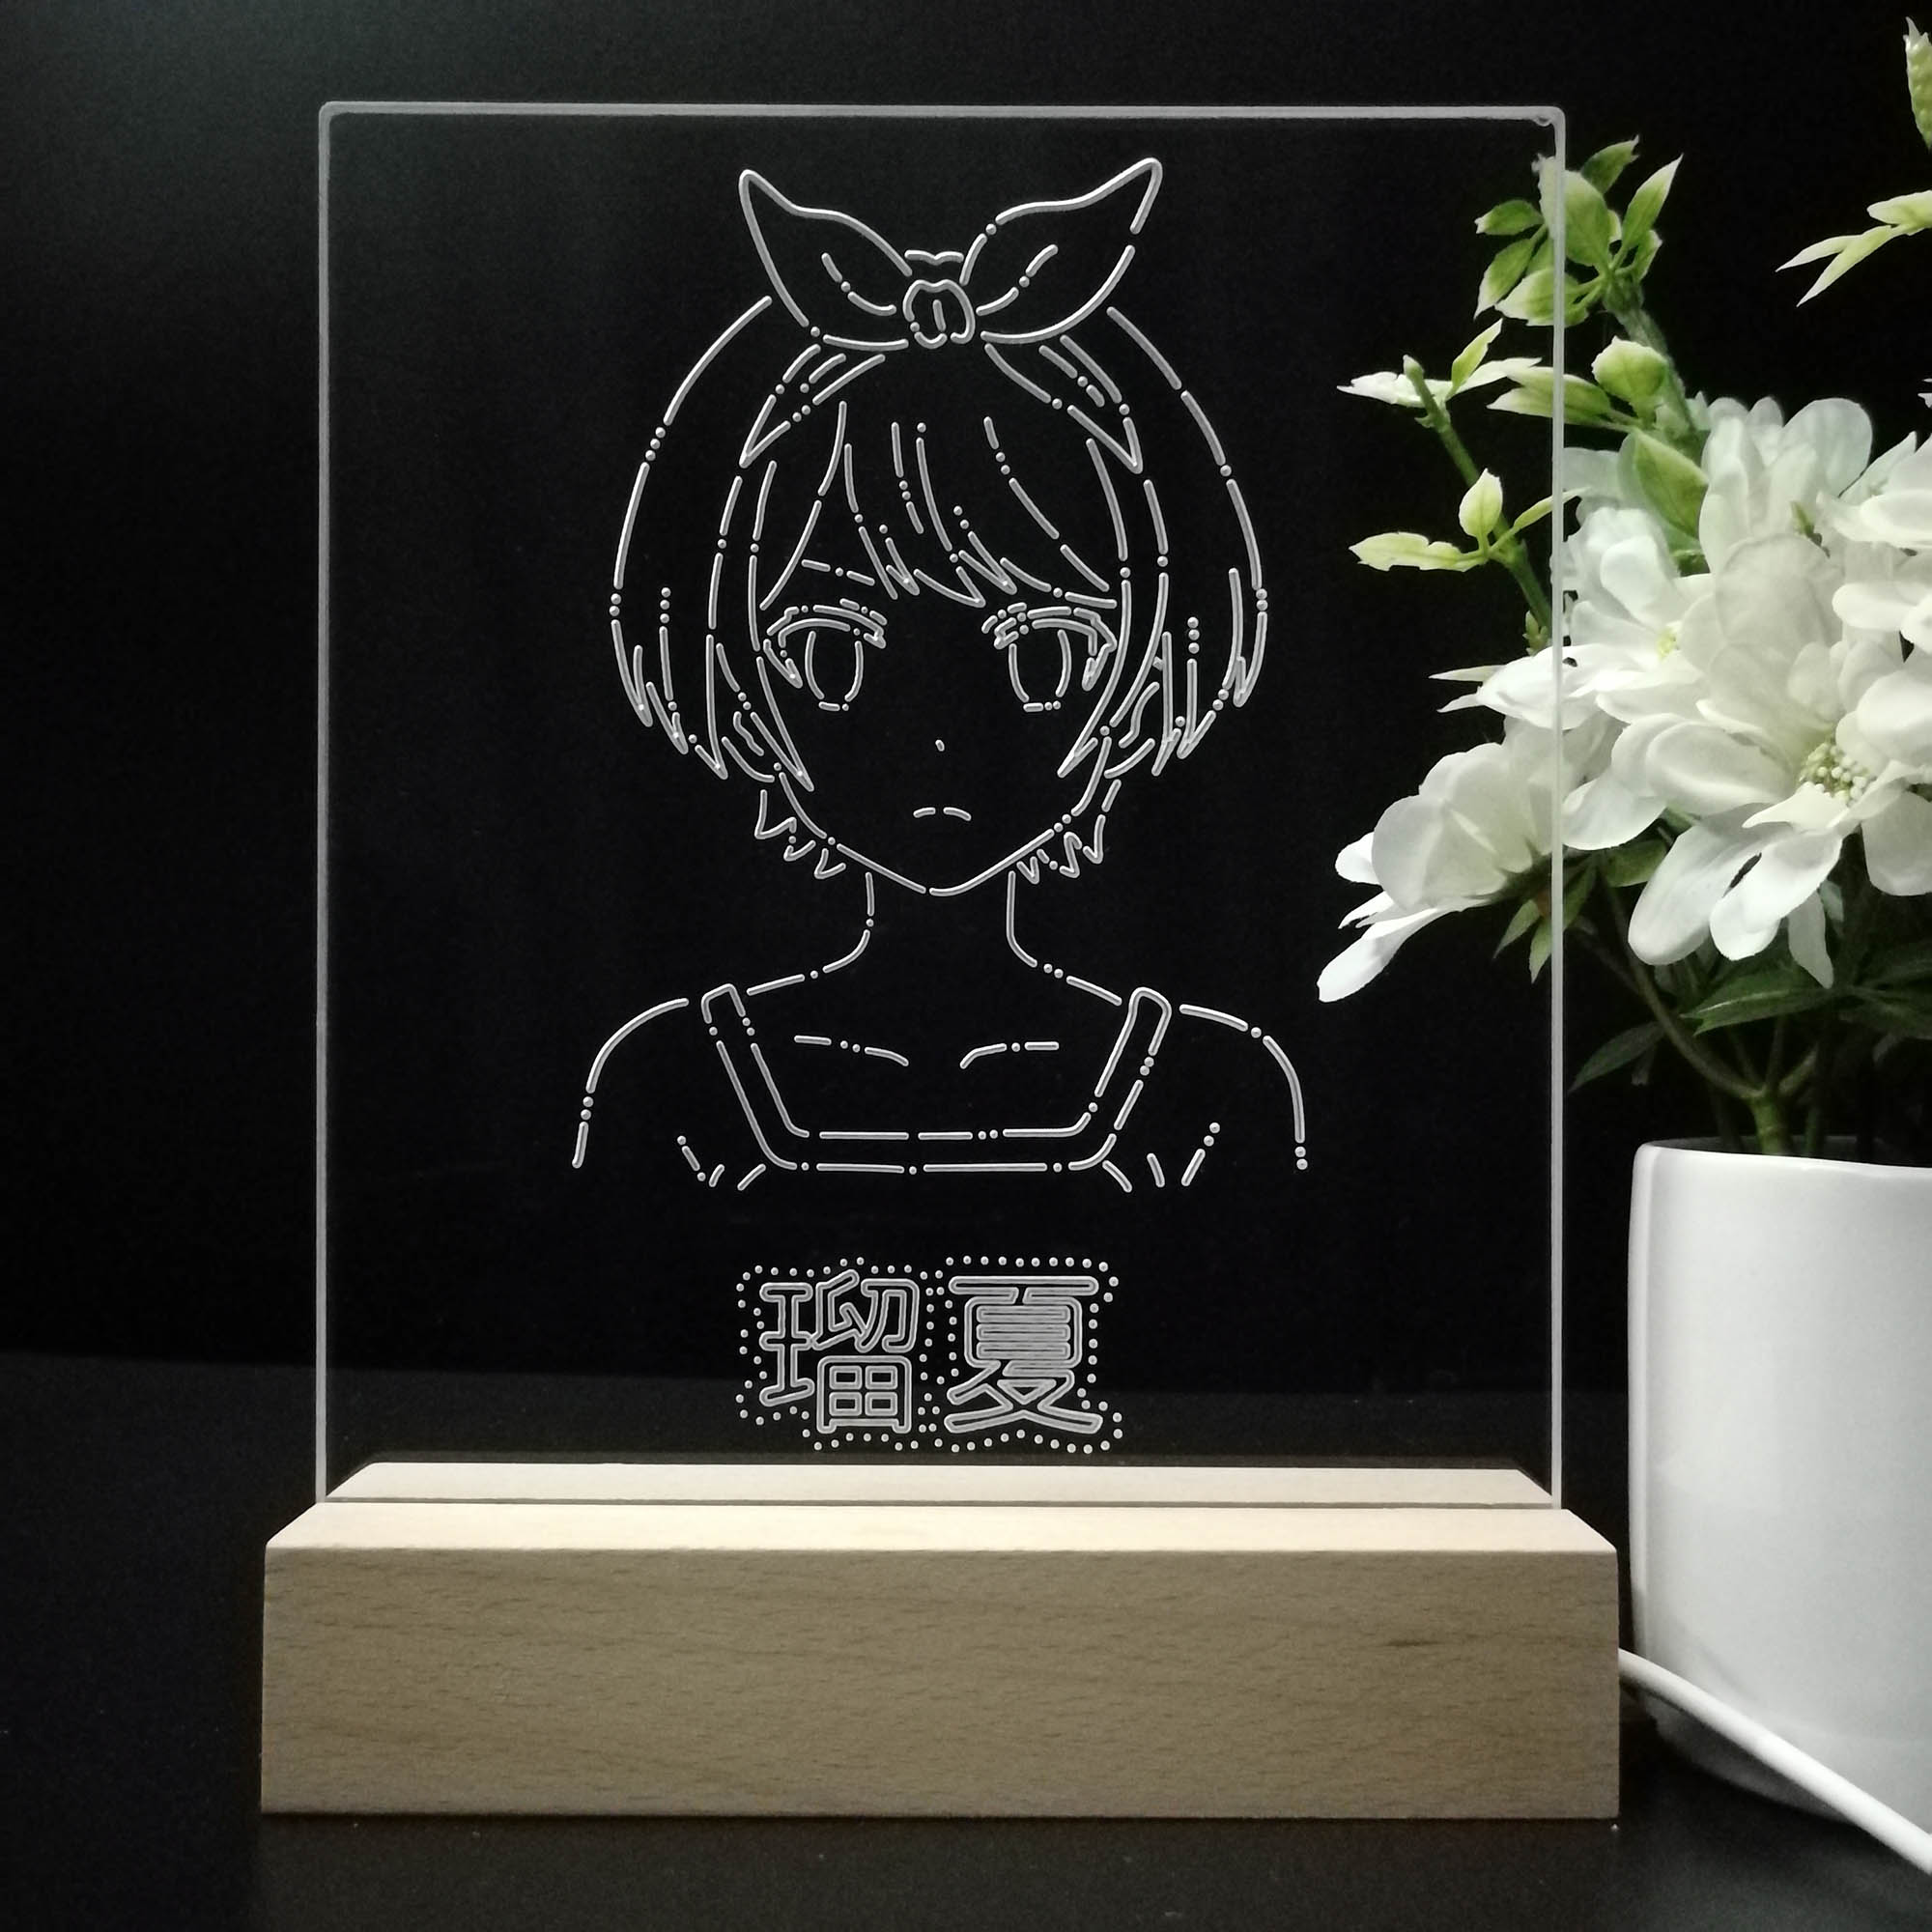 Anime Girl Game Room LED Sign Lamp Display